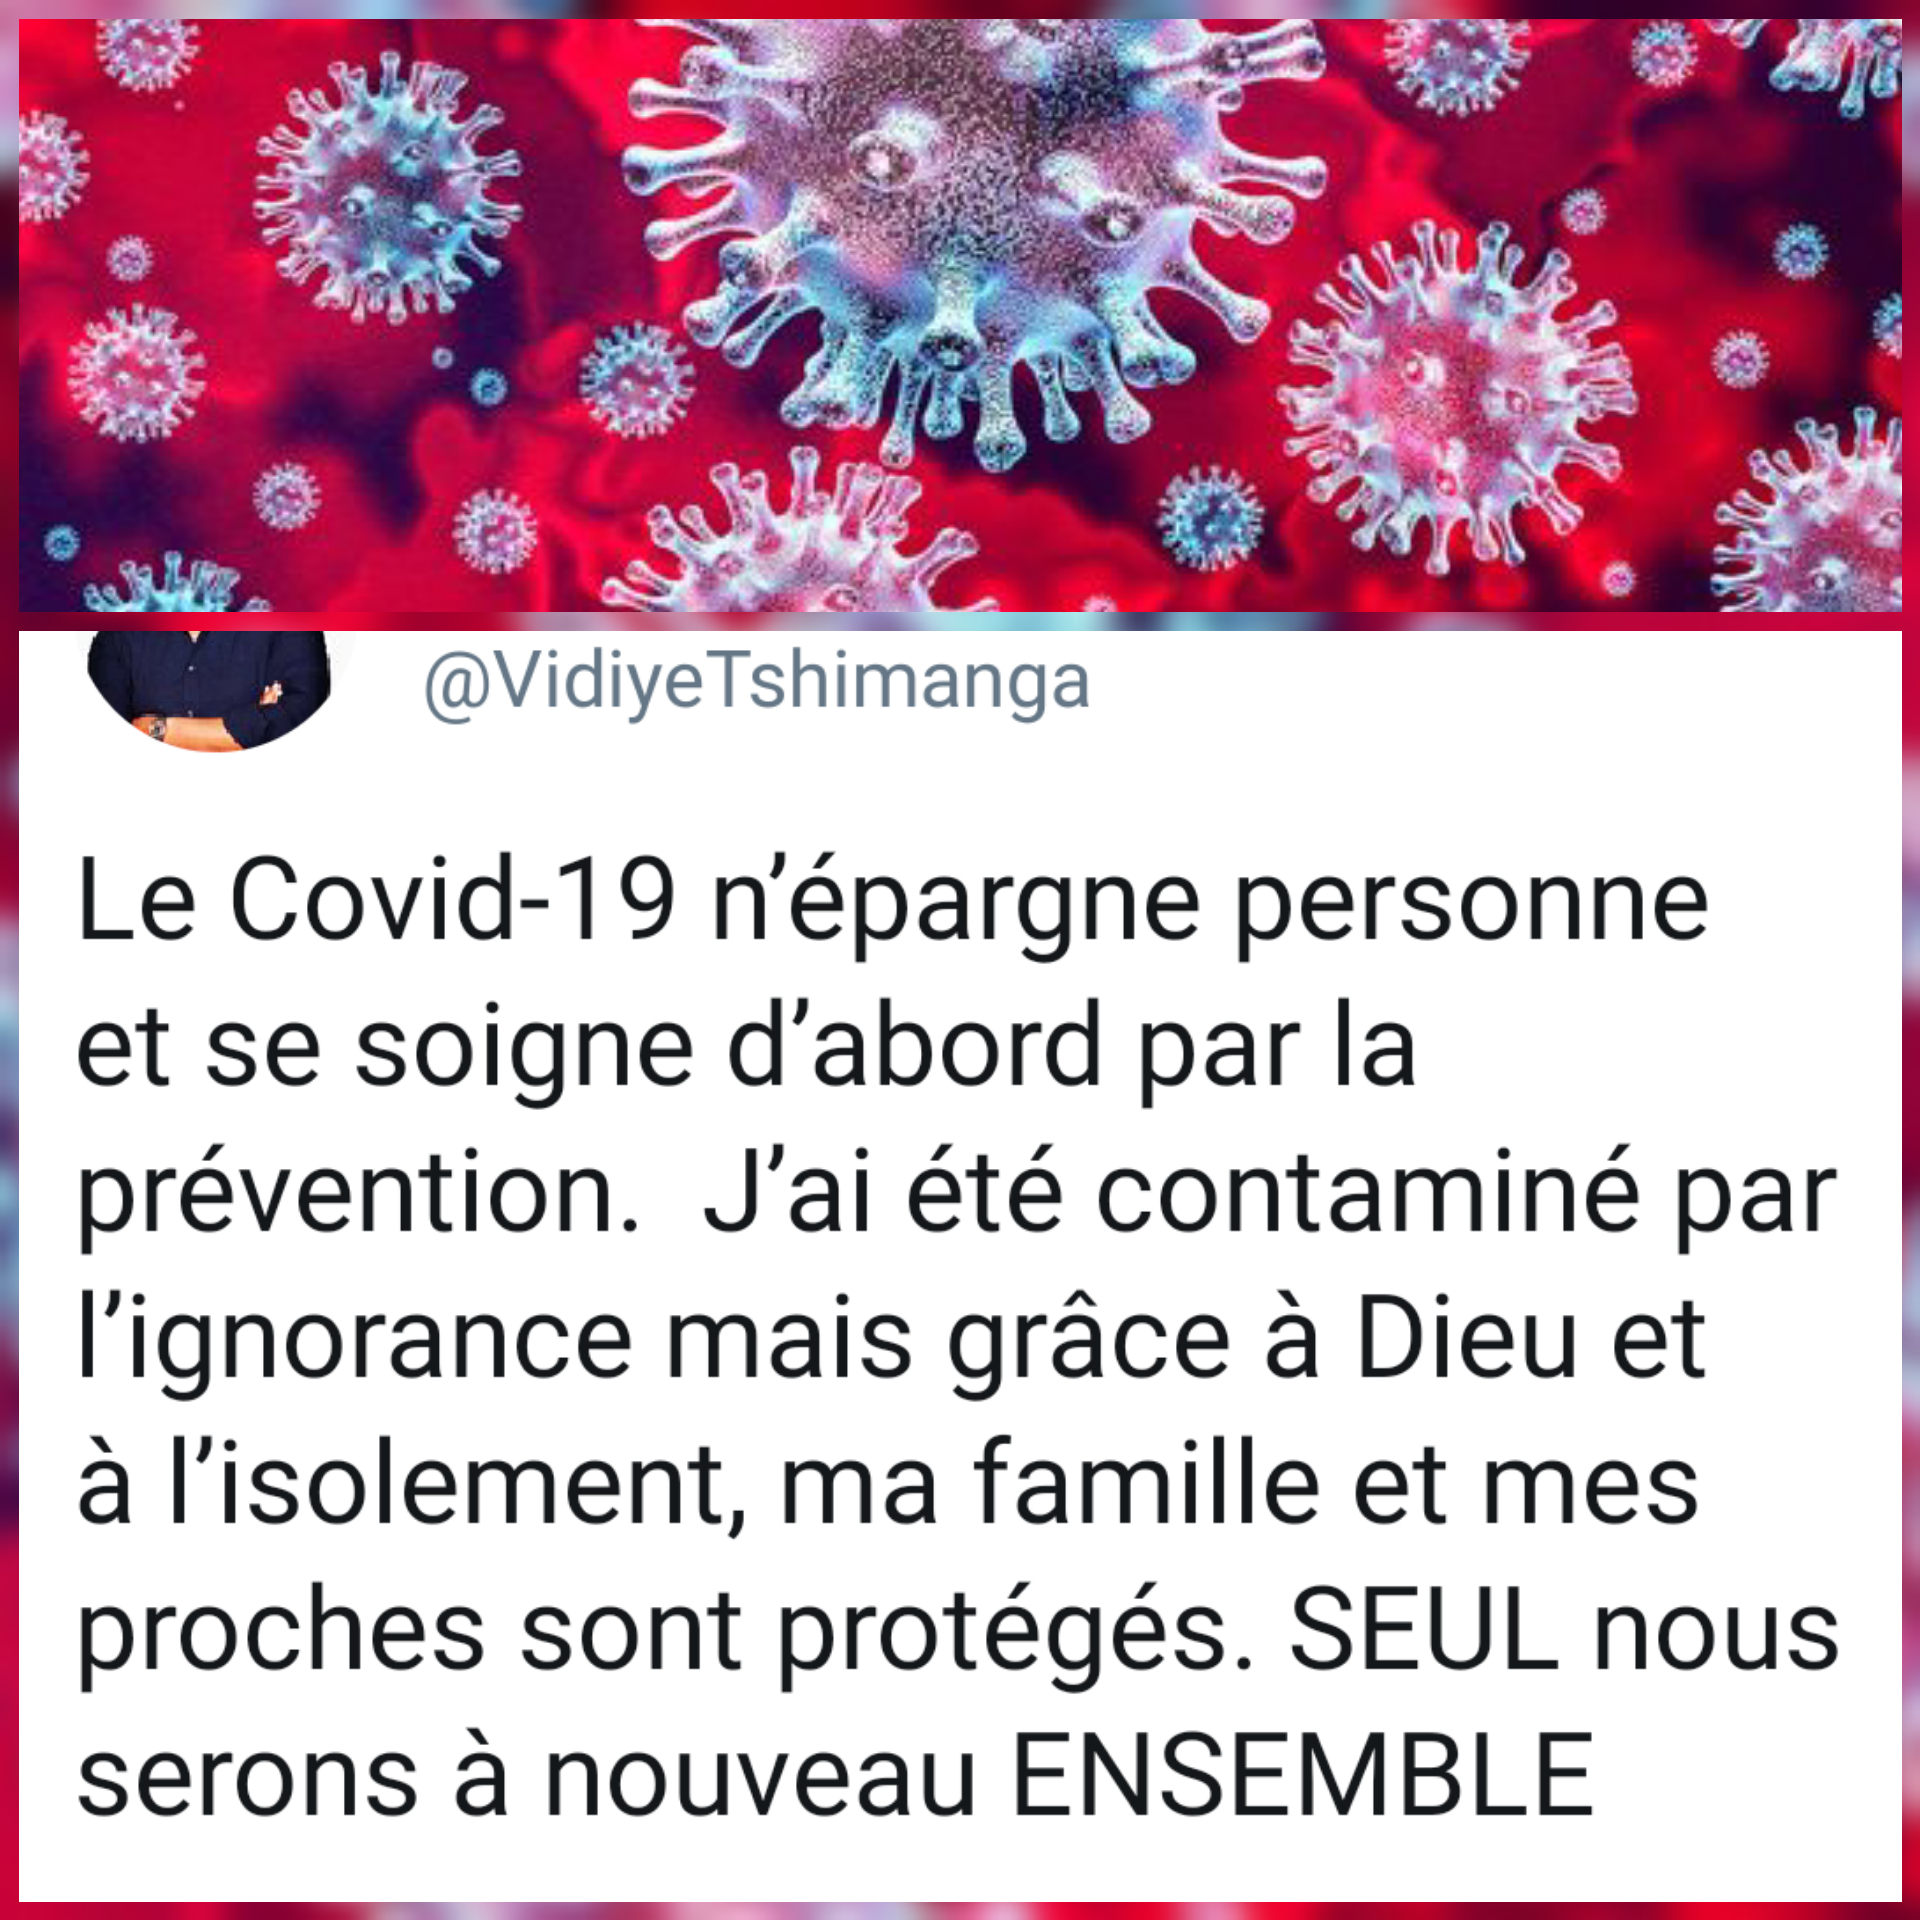 Atteint de Covid-19, Vidiye Tshimanga envoie un message à la population congolaise